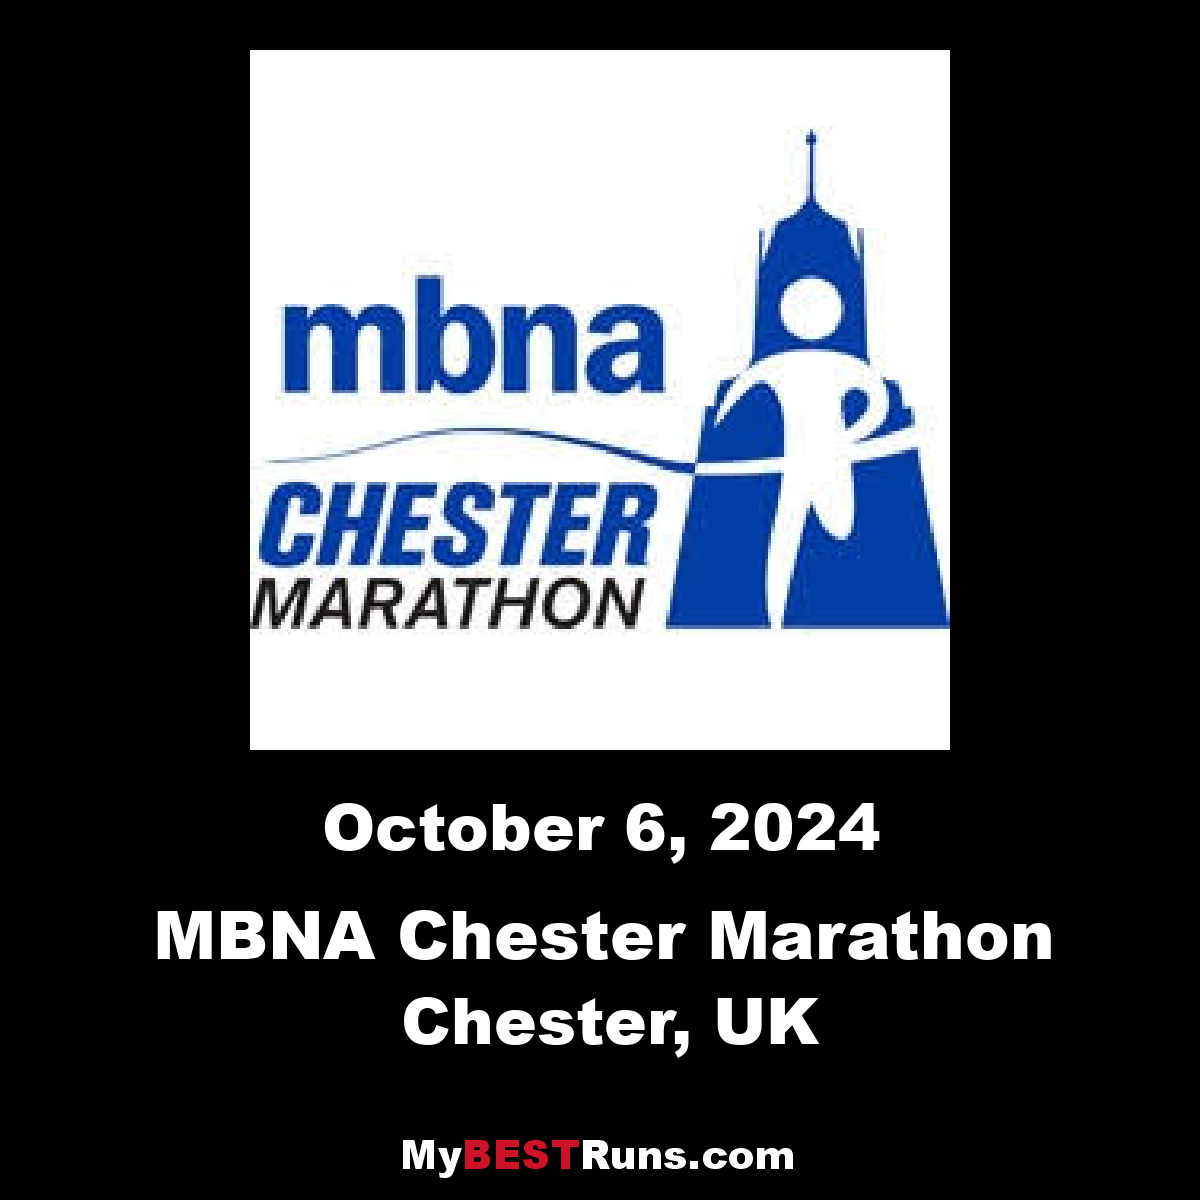 MBNA Chester Marathon